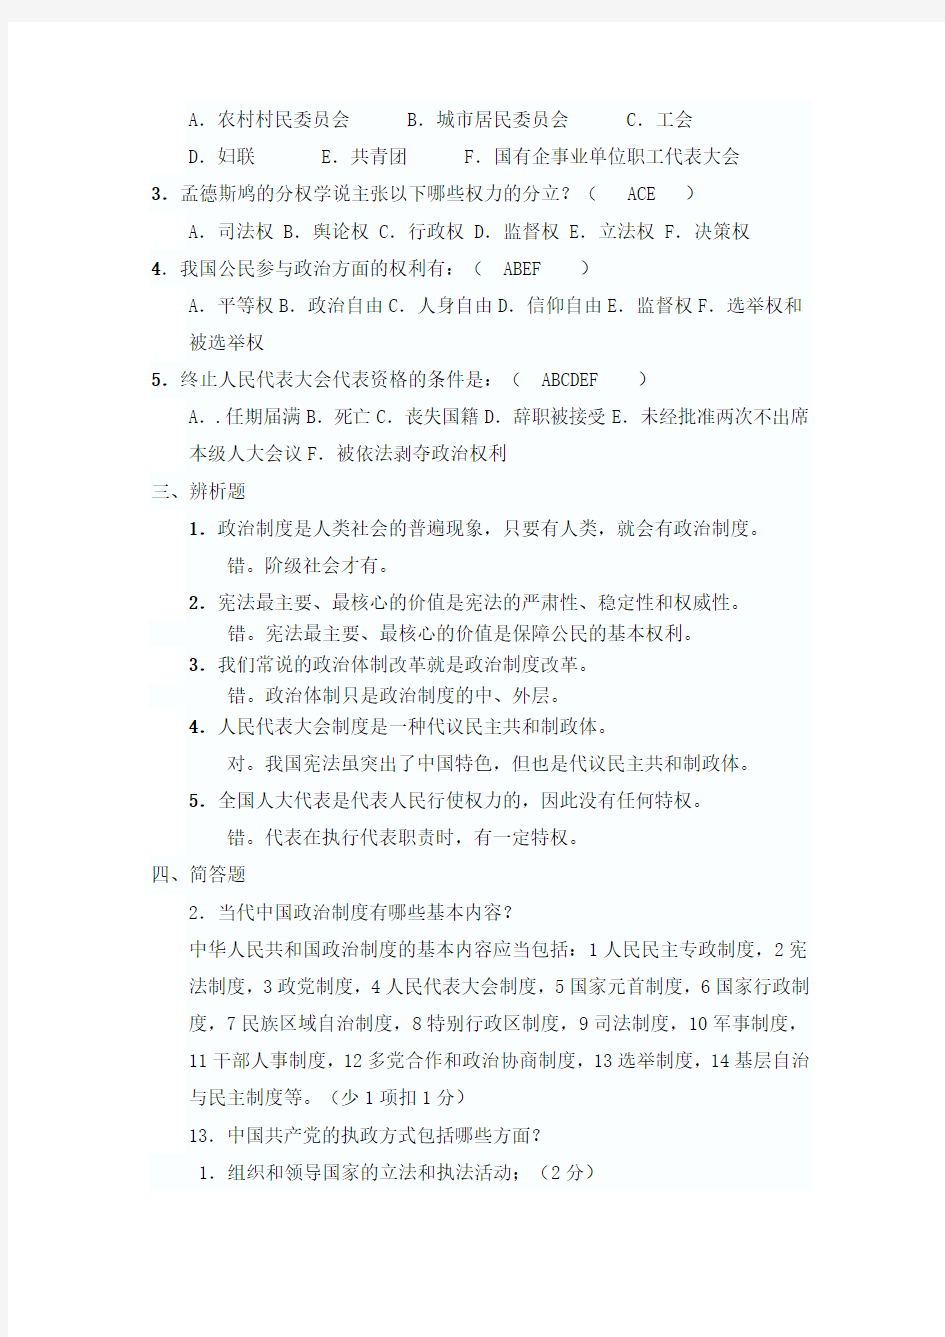 2013年最新当代中国政治制度形考作业答案(全齐)